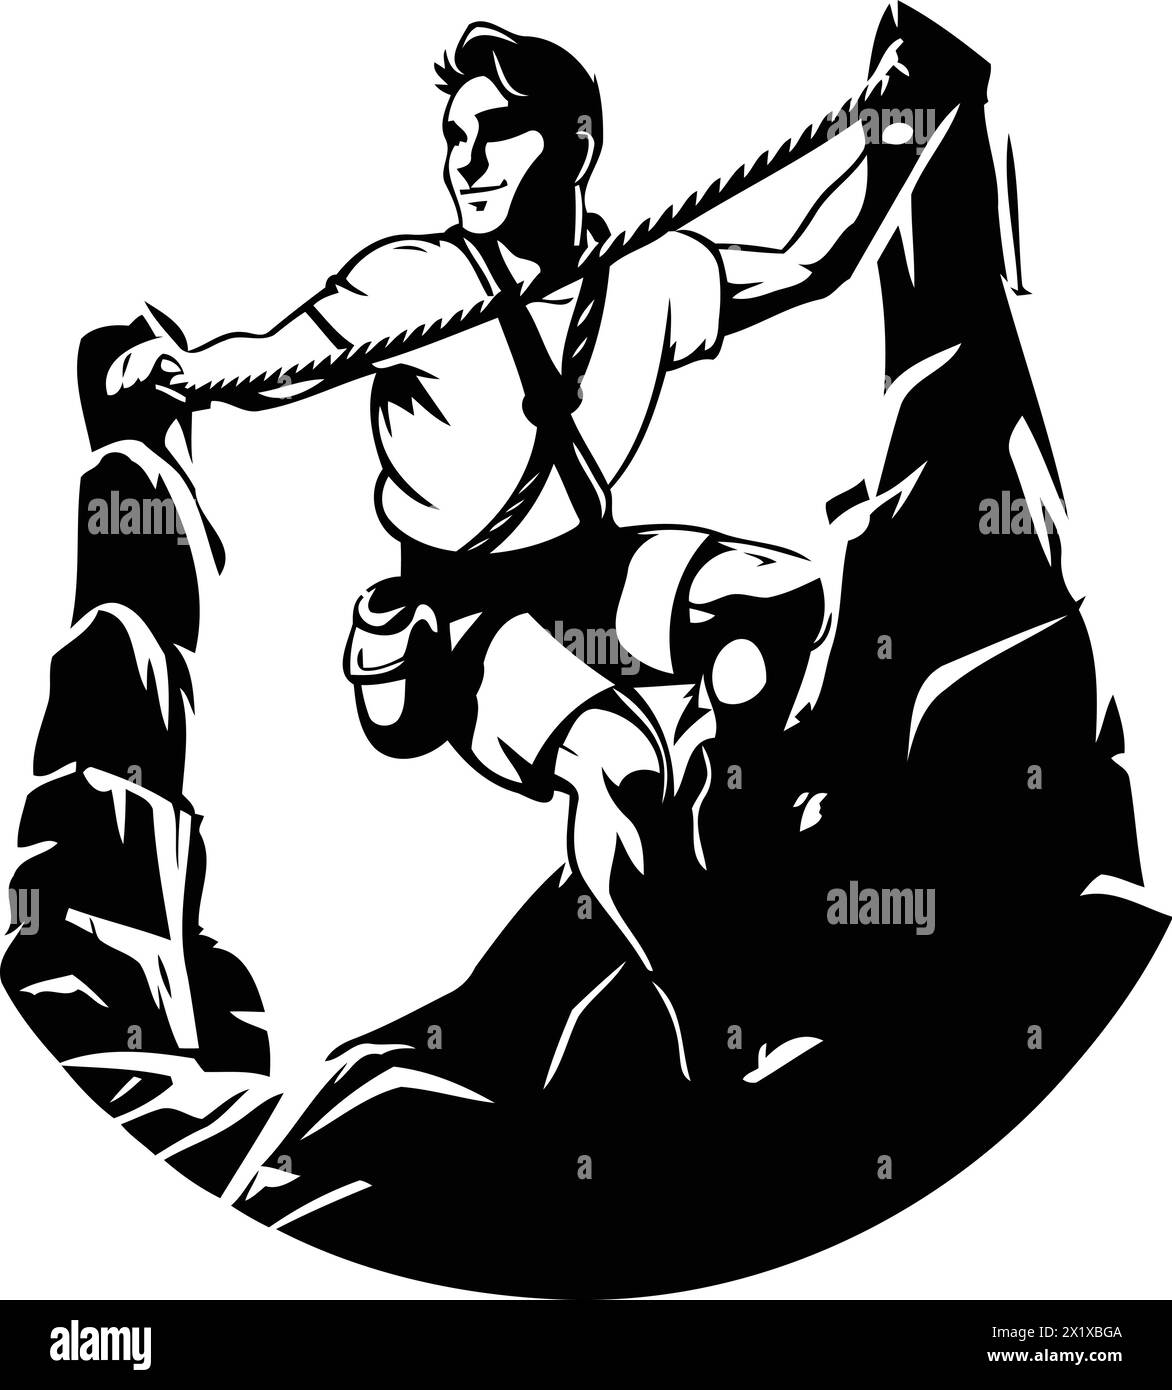 Vektor-Illustration eines jungen Mannes, der den Berg mit einem Seil hochklettert Stock Vektor